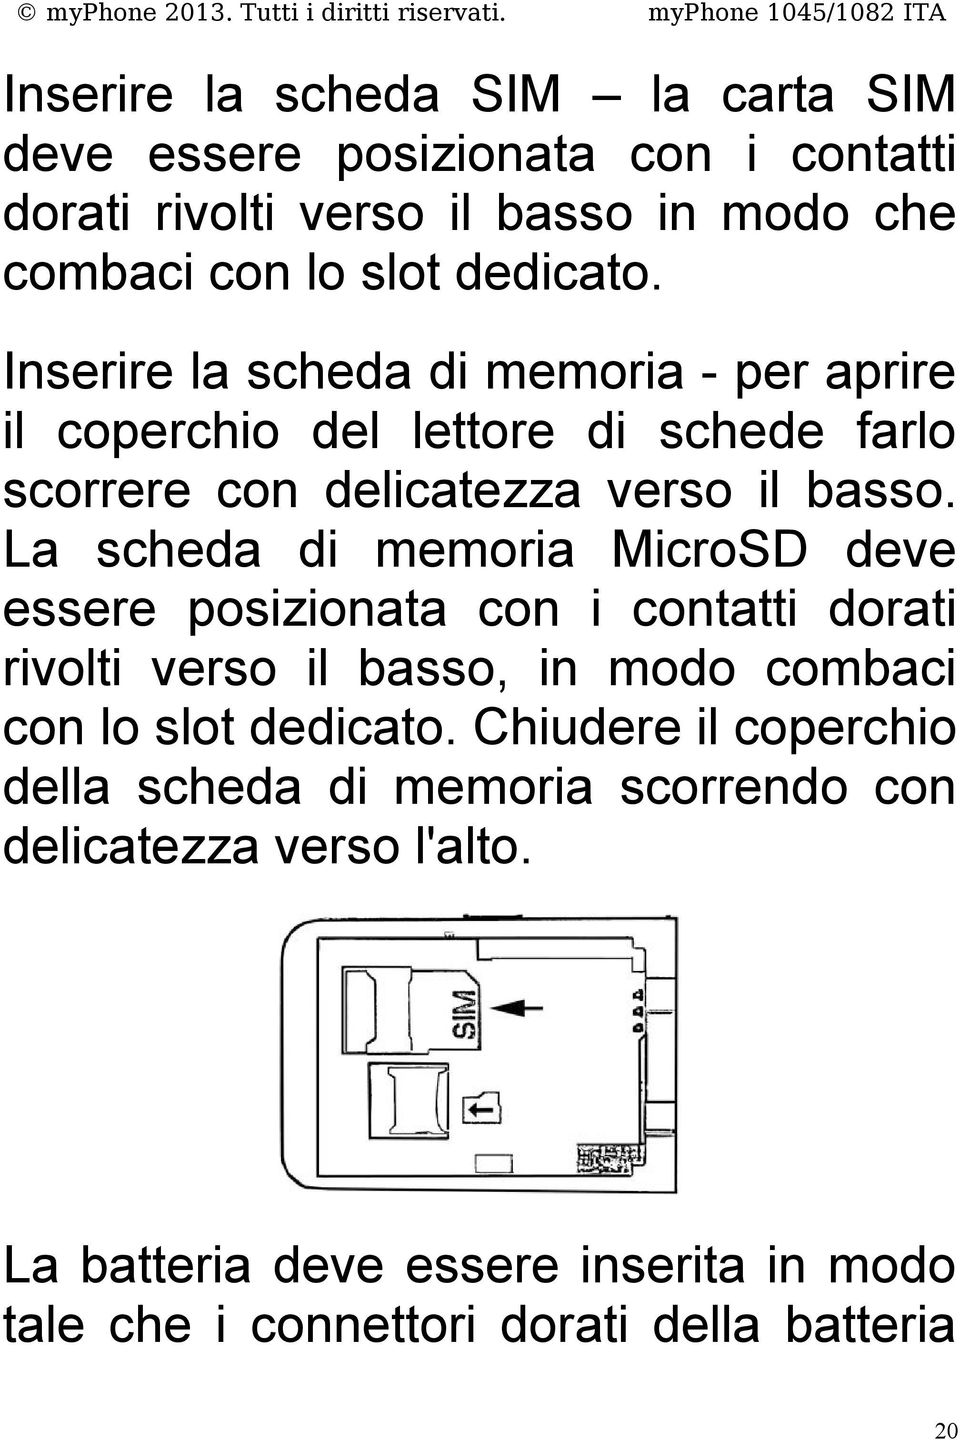 La scheda di memoria MicroSD deve essere posizionata con i contatti dorati rivolti verso il basso, in modo combaci con lo slot dedicato.